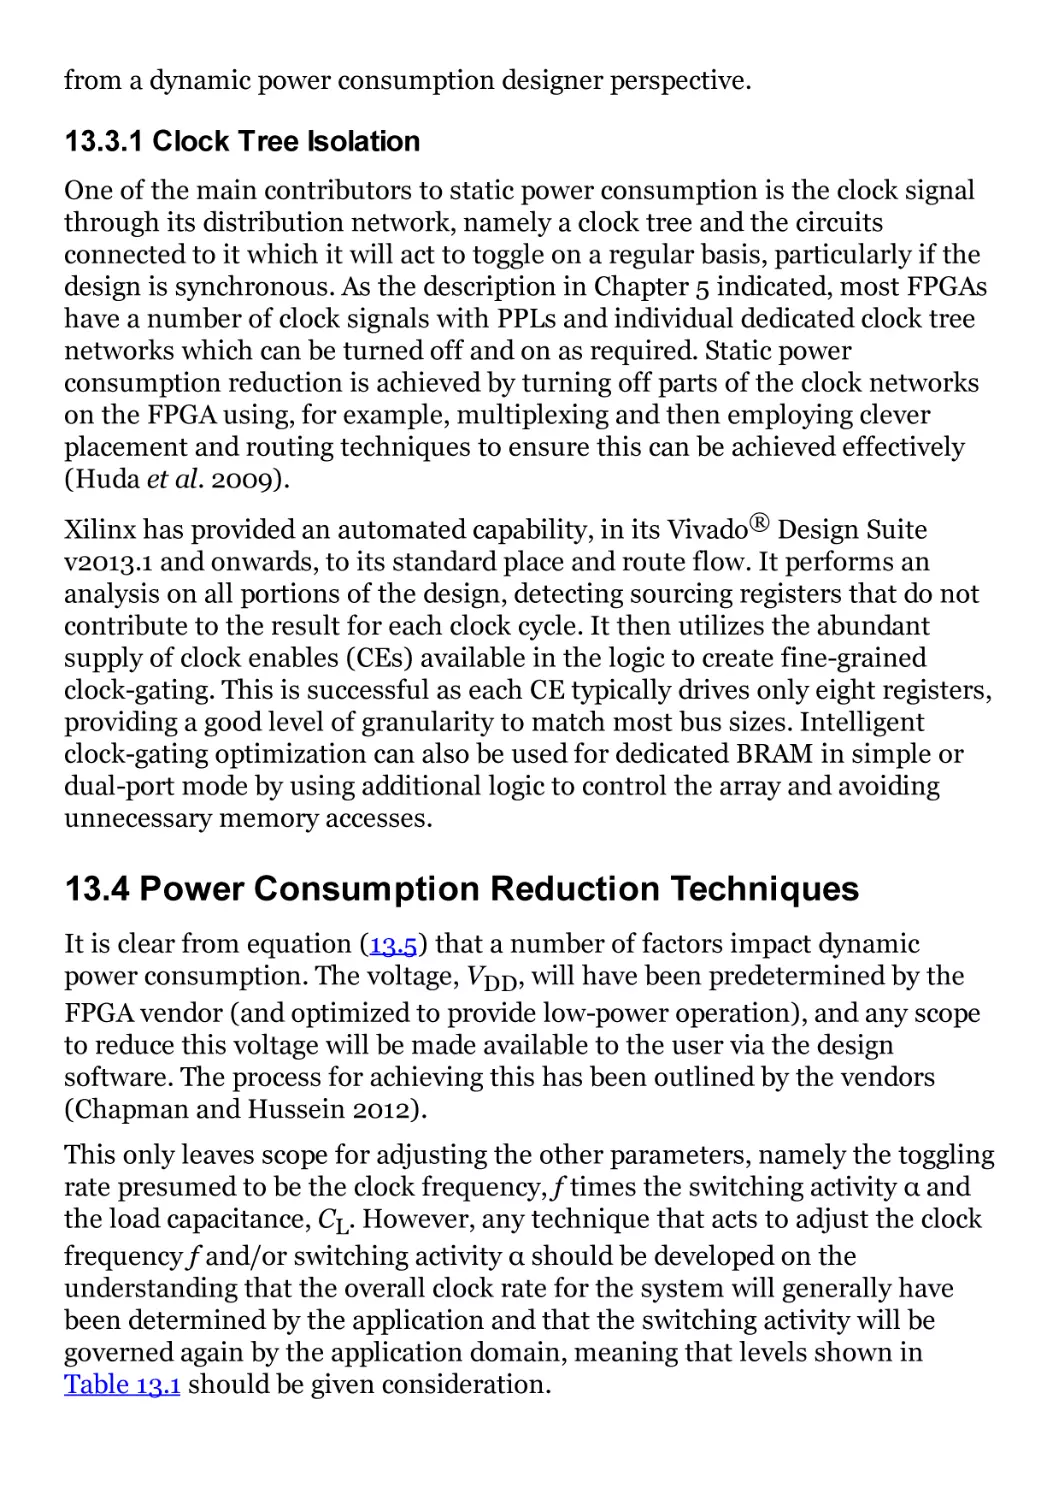 13.4 Power Consumption Reduction Techniques